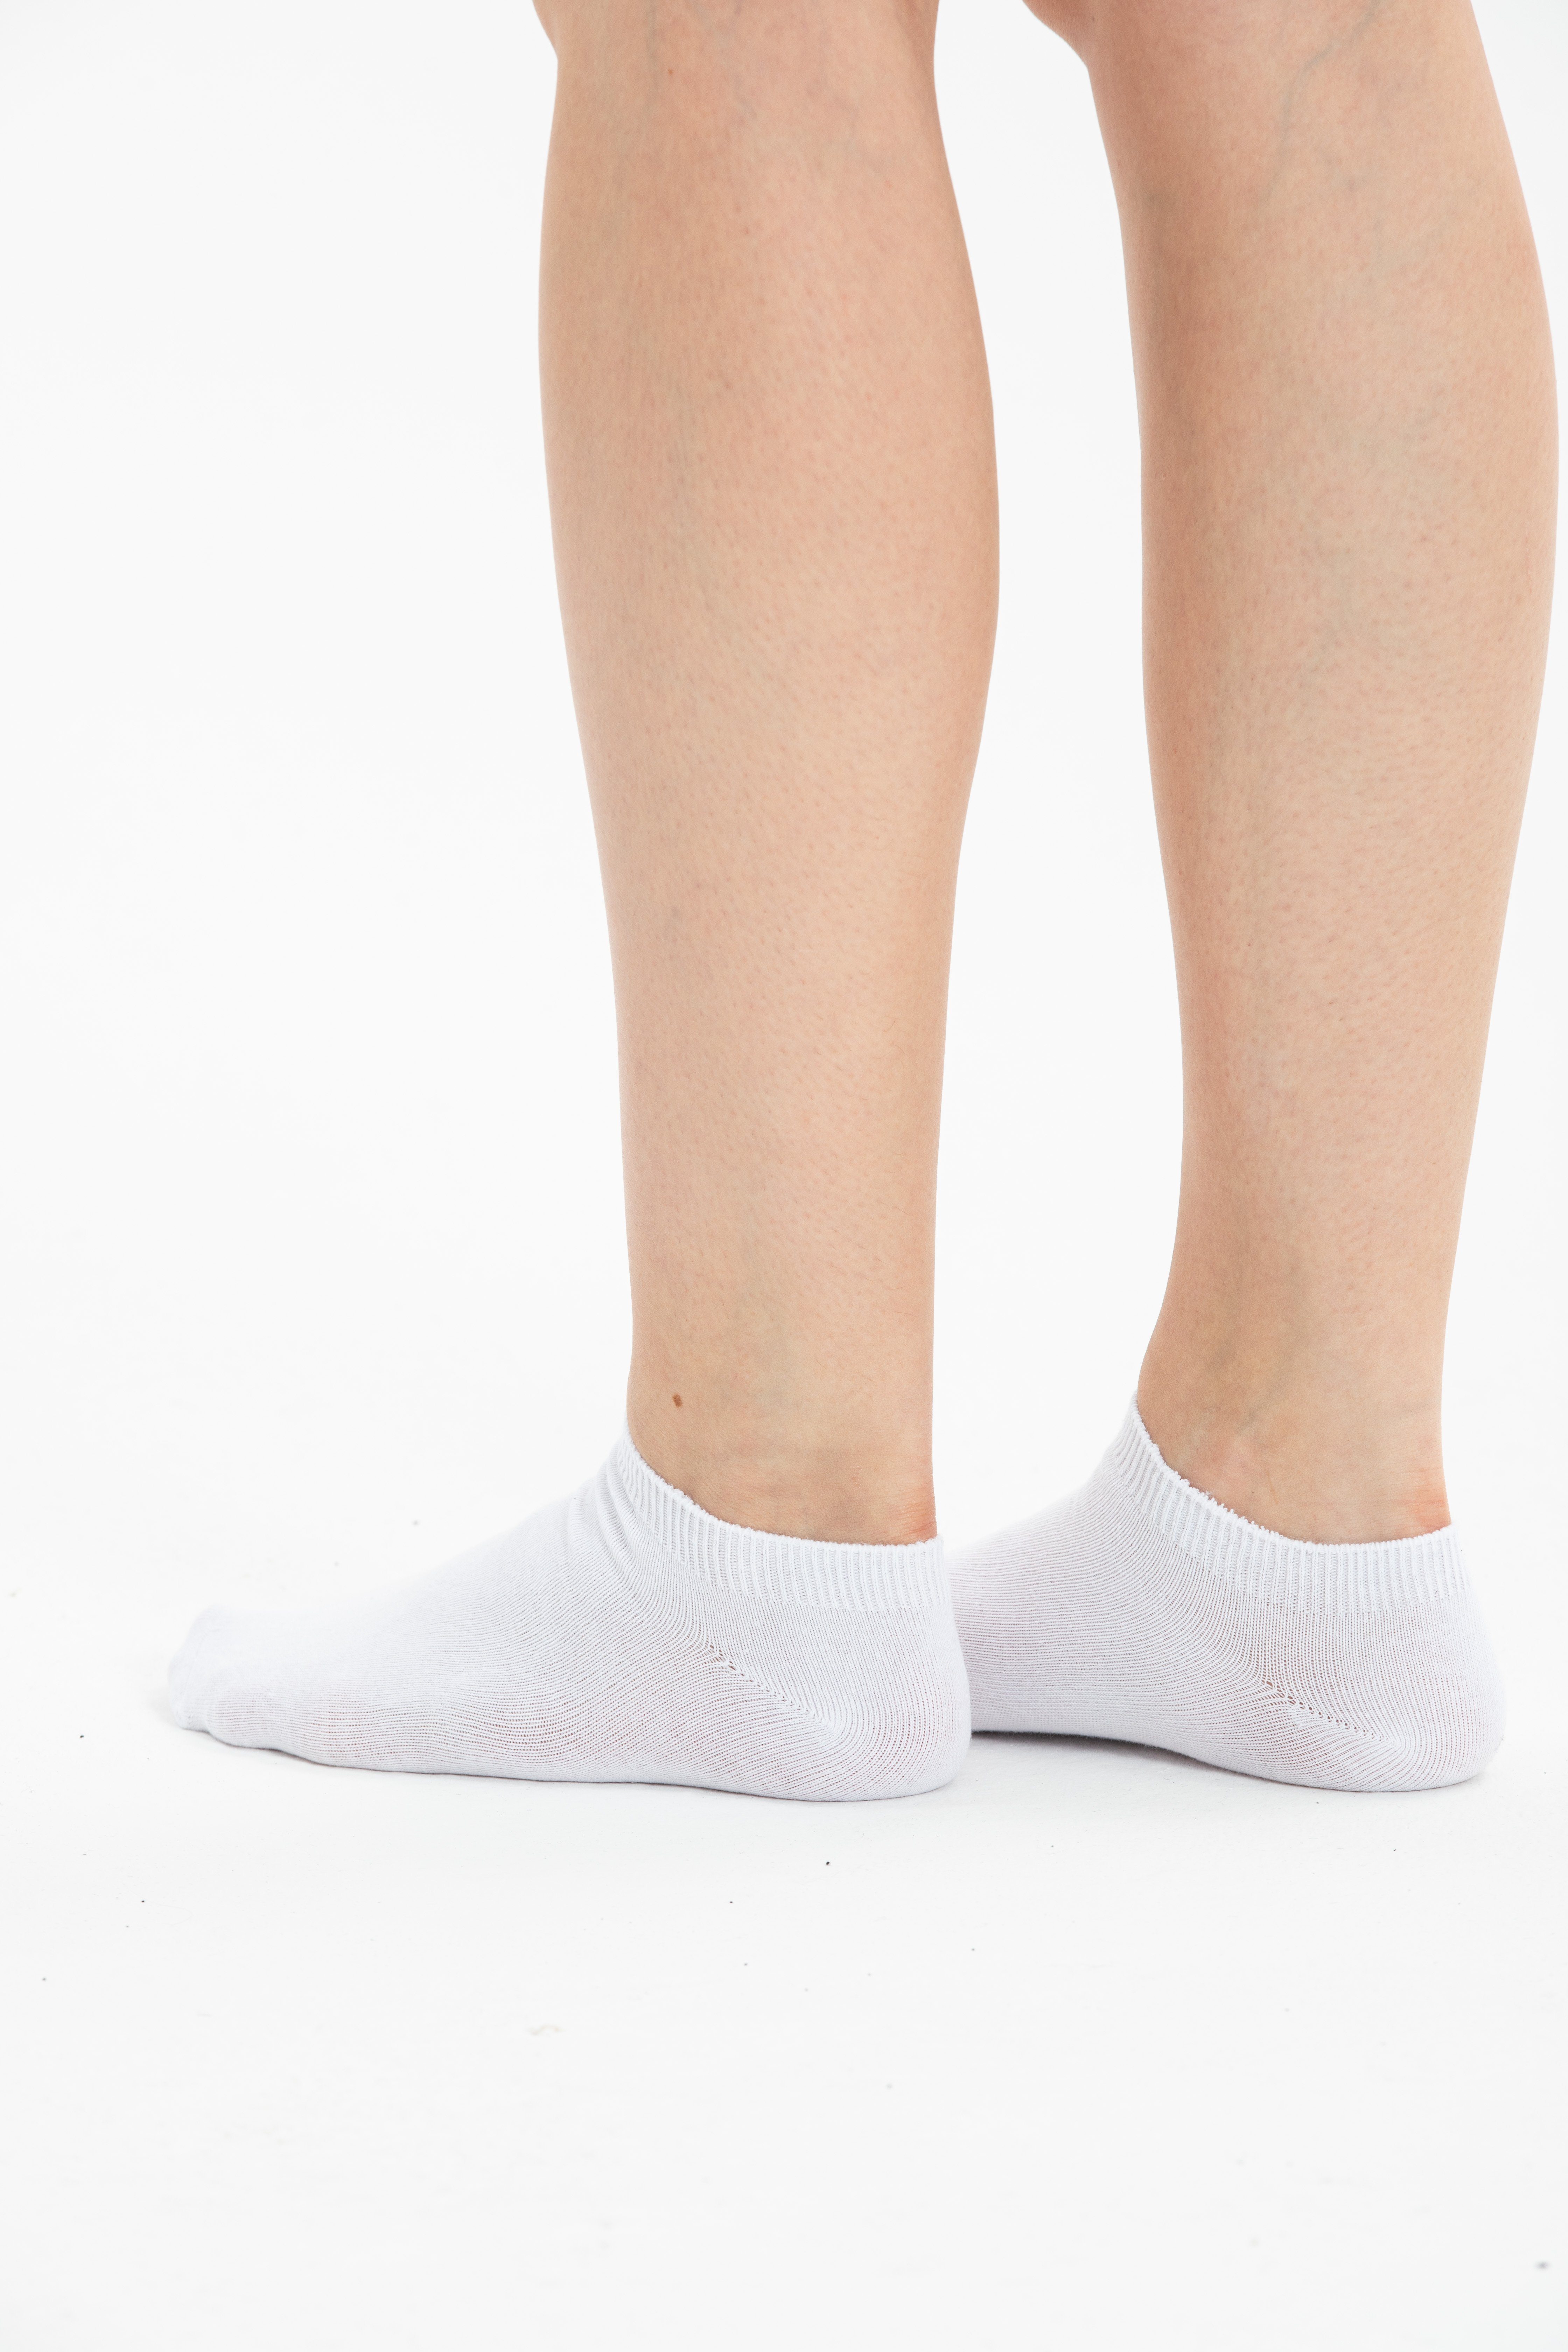 NERS Sneakersocken Baumwolle mit Weiß (6-Paar, Herren Paar) für und Damen 6 Bündchen aus